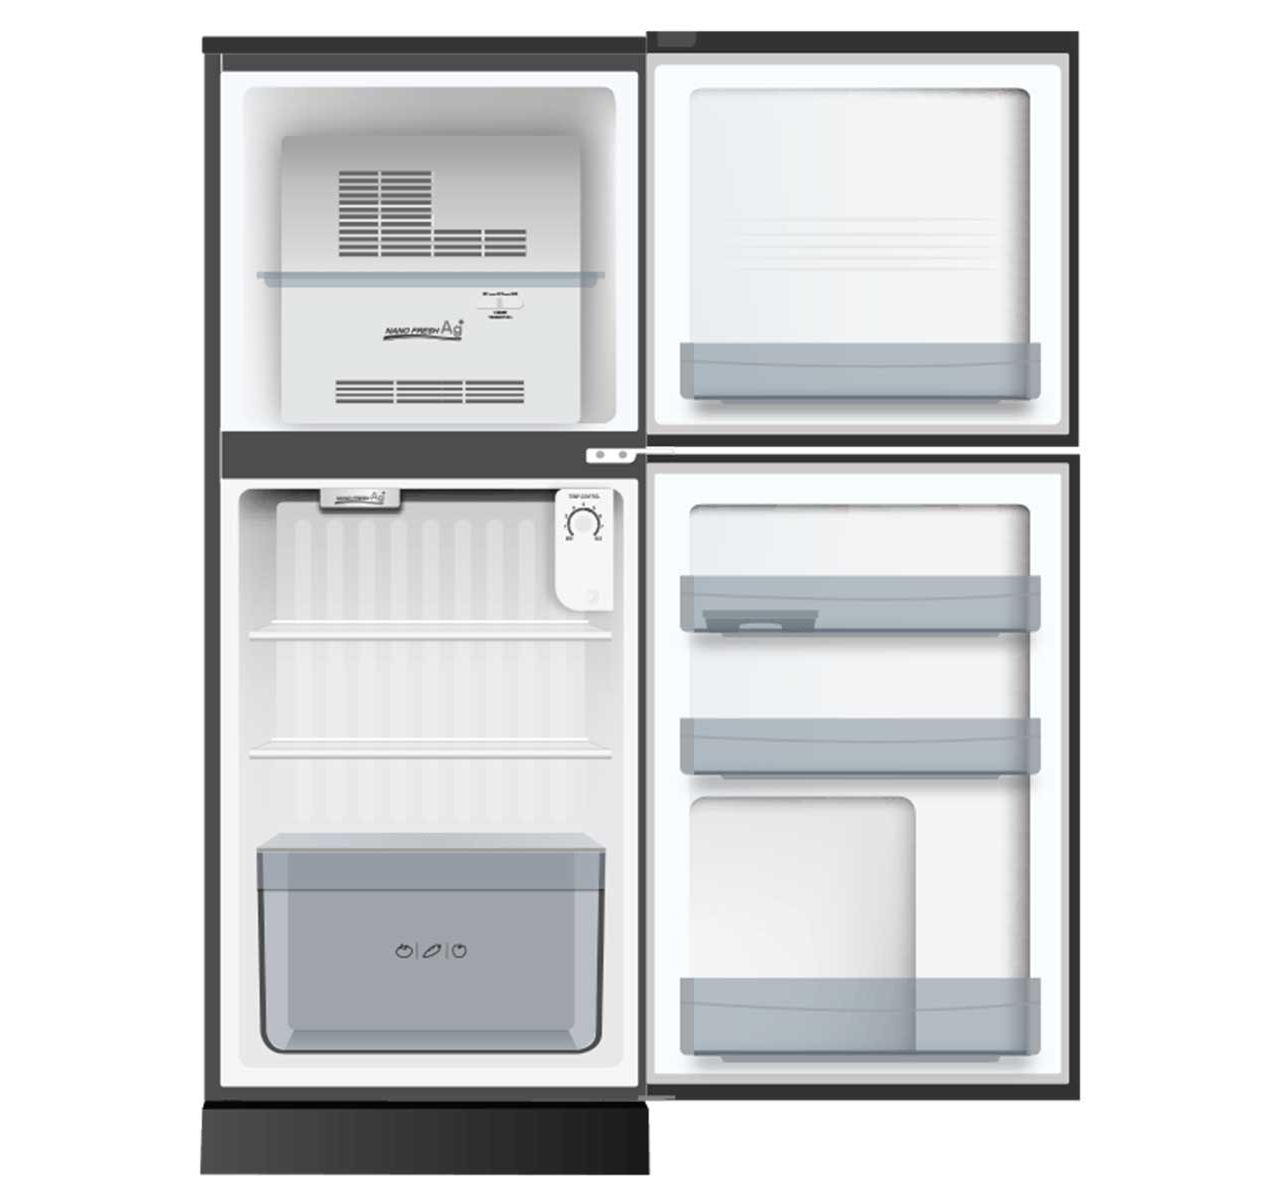 [GIAO HÀNG XUYÊN TẾT]TRẢ GÓP 0% - Tủ lạnh Aqua 130 lít AQR-T150FA BS công nghệ làm lạnh đa chiều...